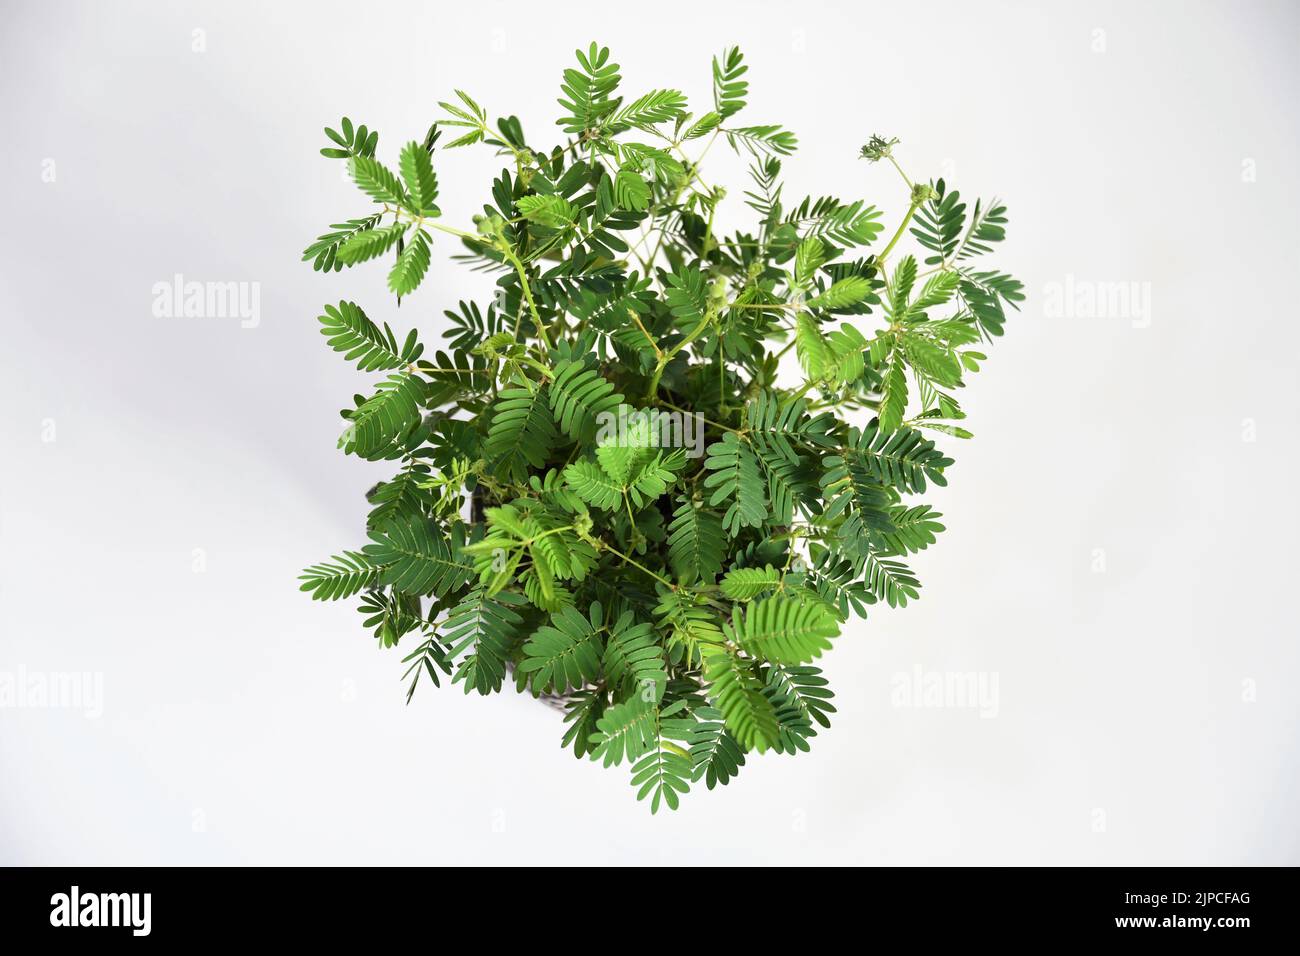 Mimosa pudica, également connue sous le nom de plante sensible, plante endormie, plante d'action, touch-me-not, et plante de shampoings. Isolé sur fond blanc Banque D'Images